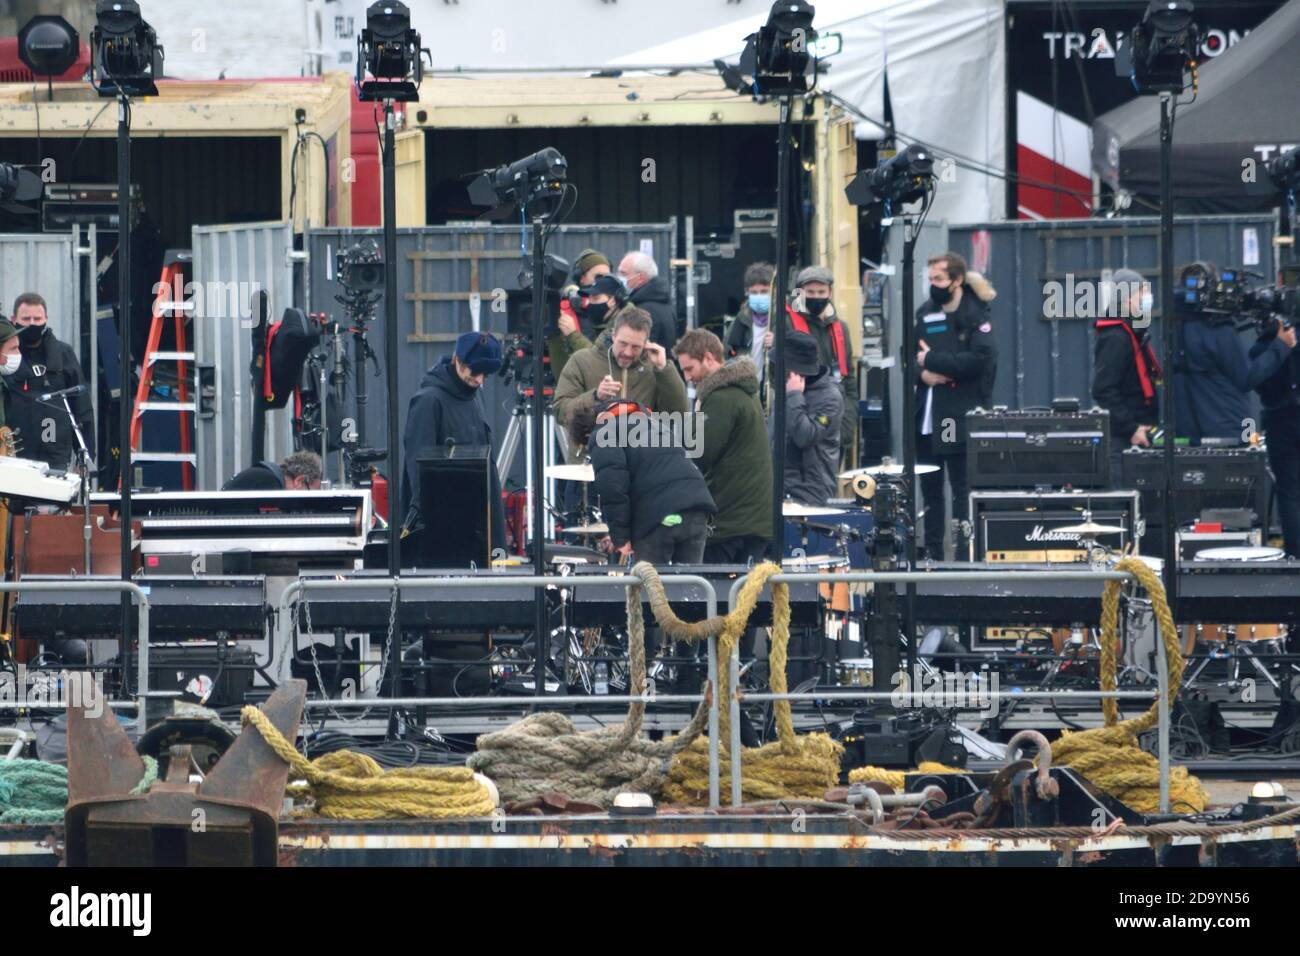 Liam Gallagher a vu se préparer à filmer sur une barge La Tamise à Londres Banque D'Images